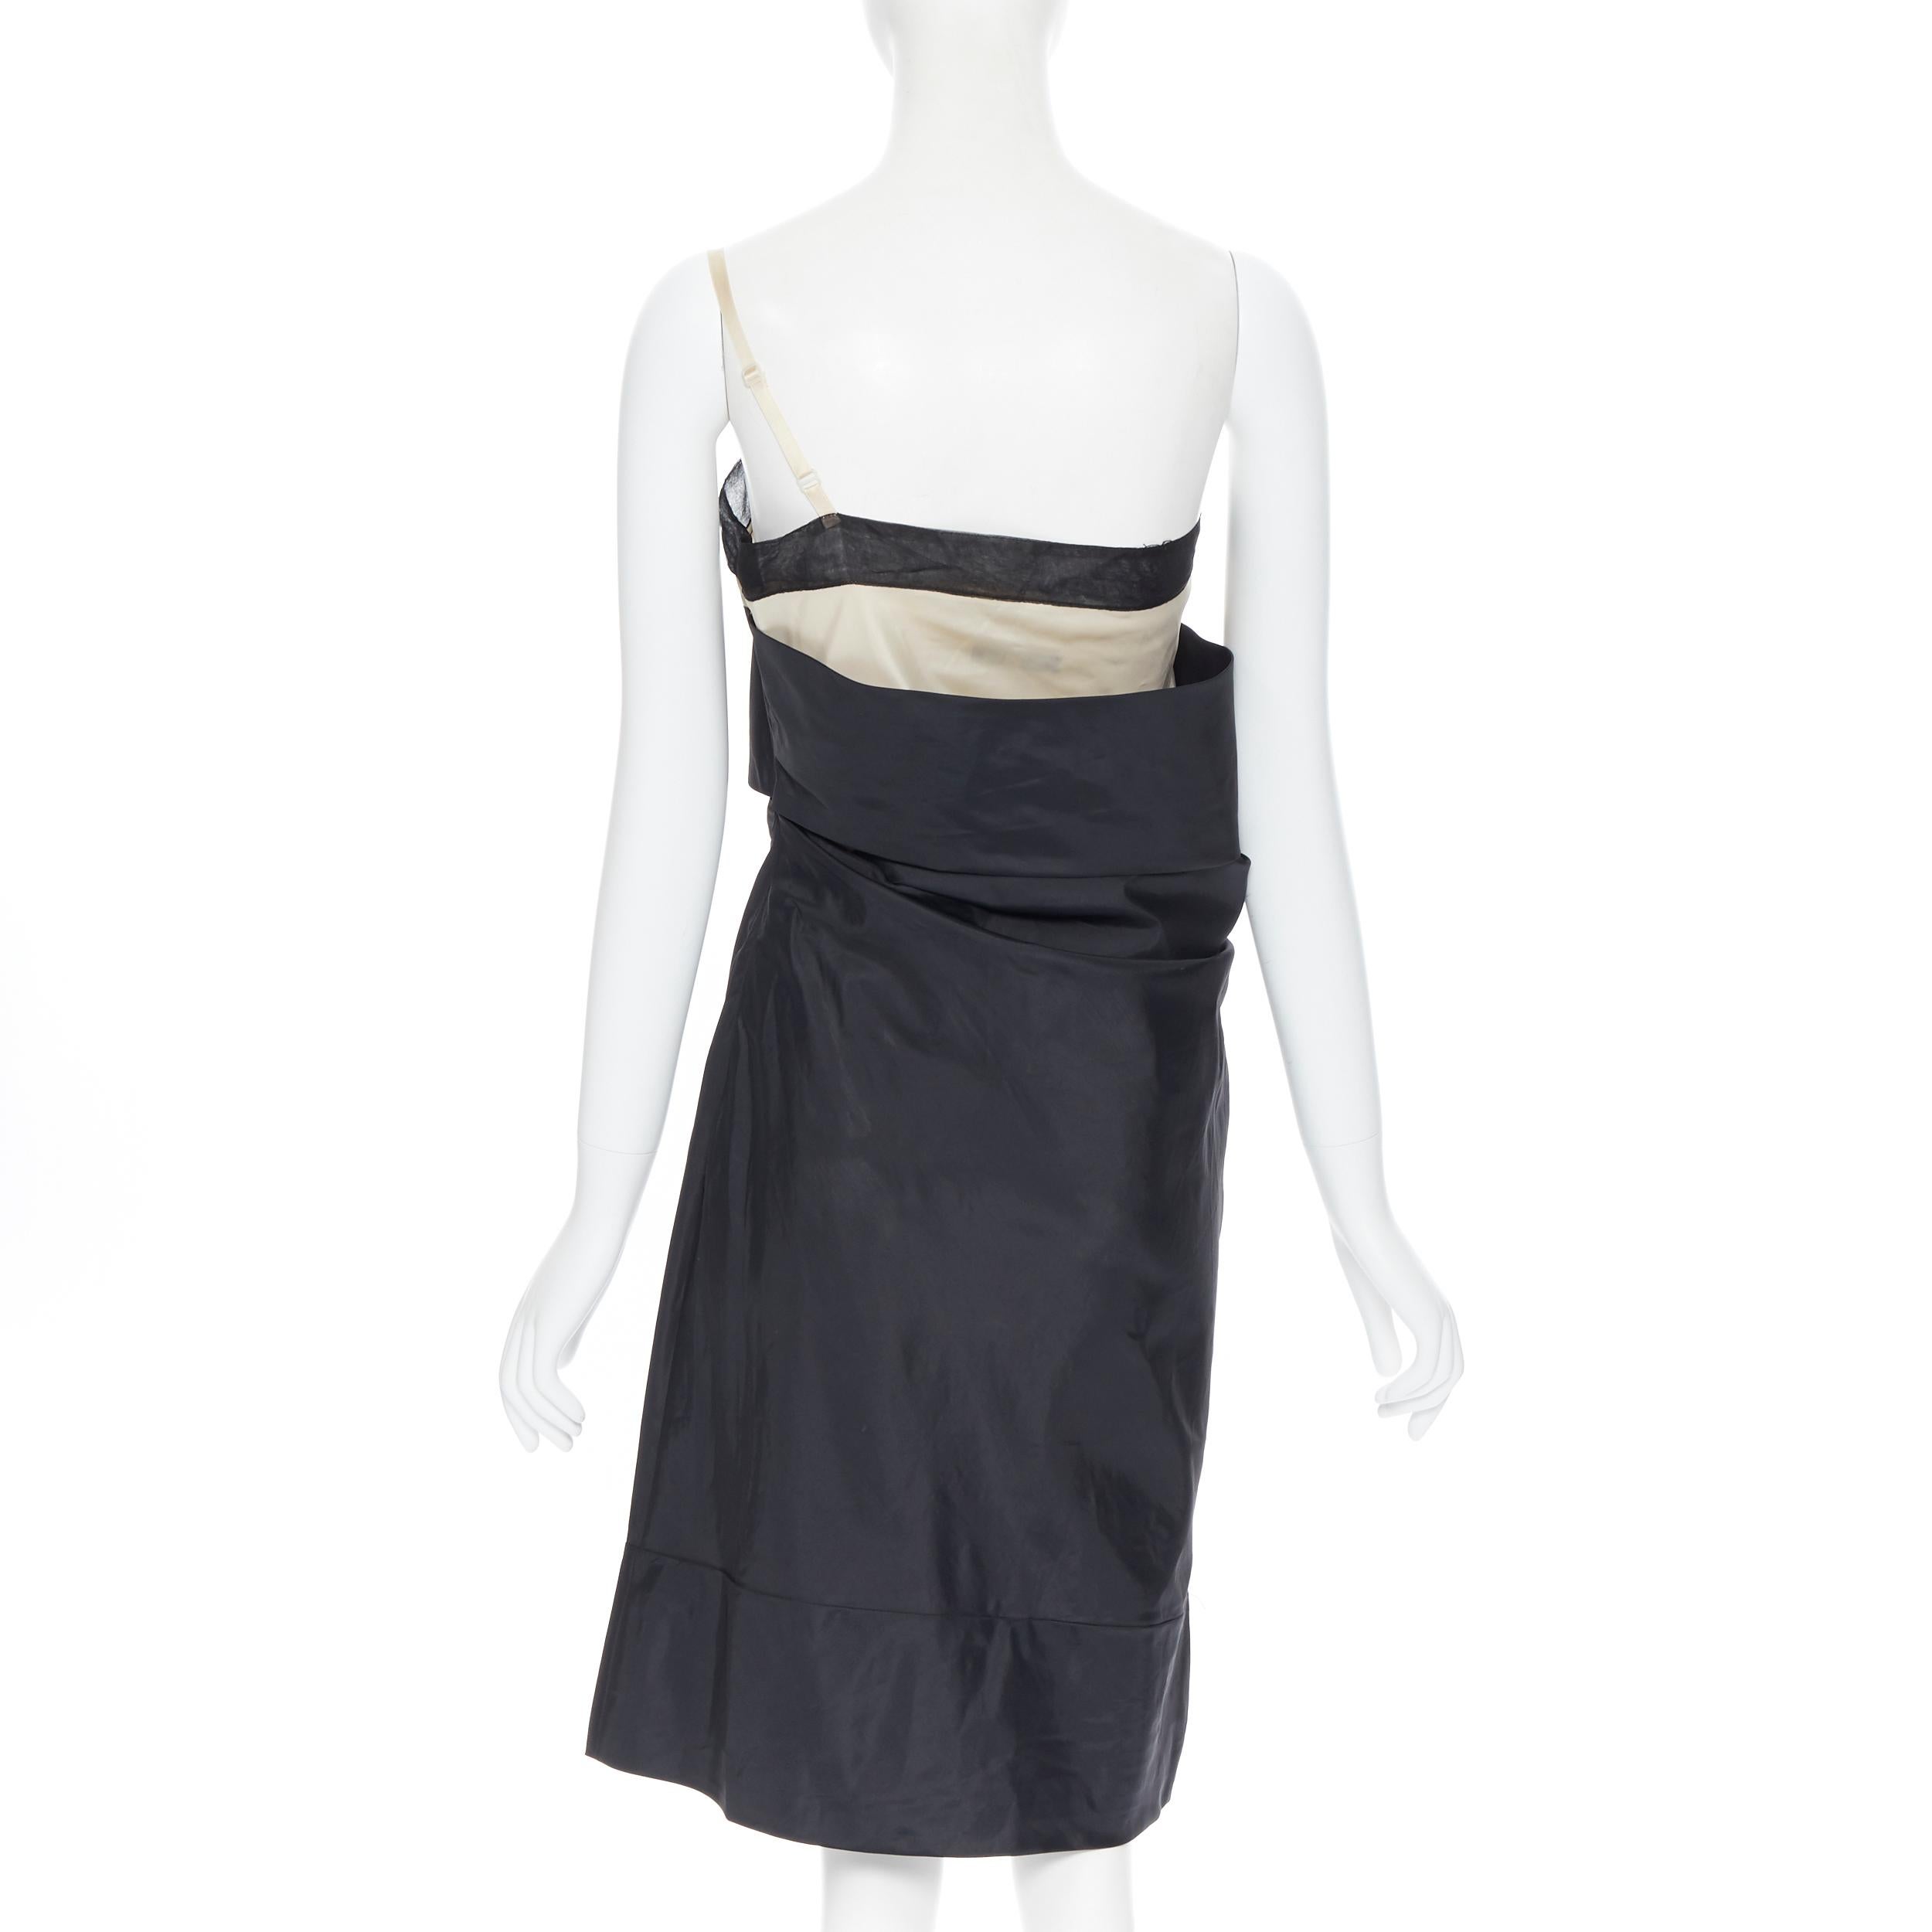 Black vintage HELMUT LANG SS 1997 black nude sash one shoulder asymmetric dress M rare For Sale